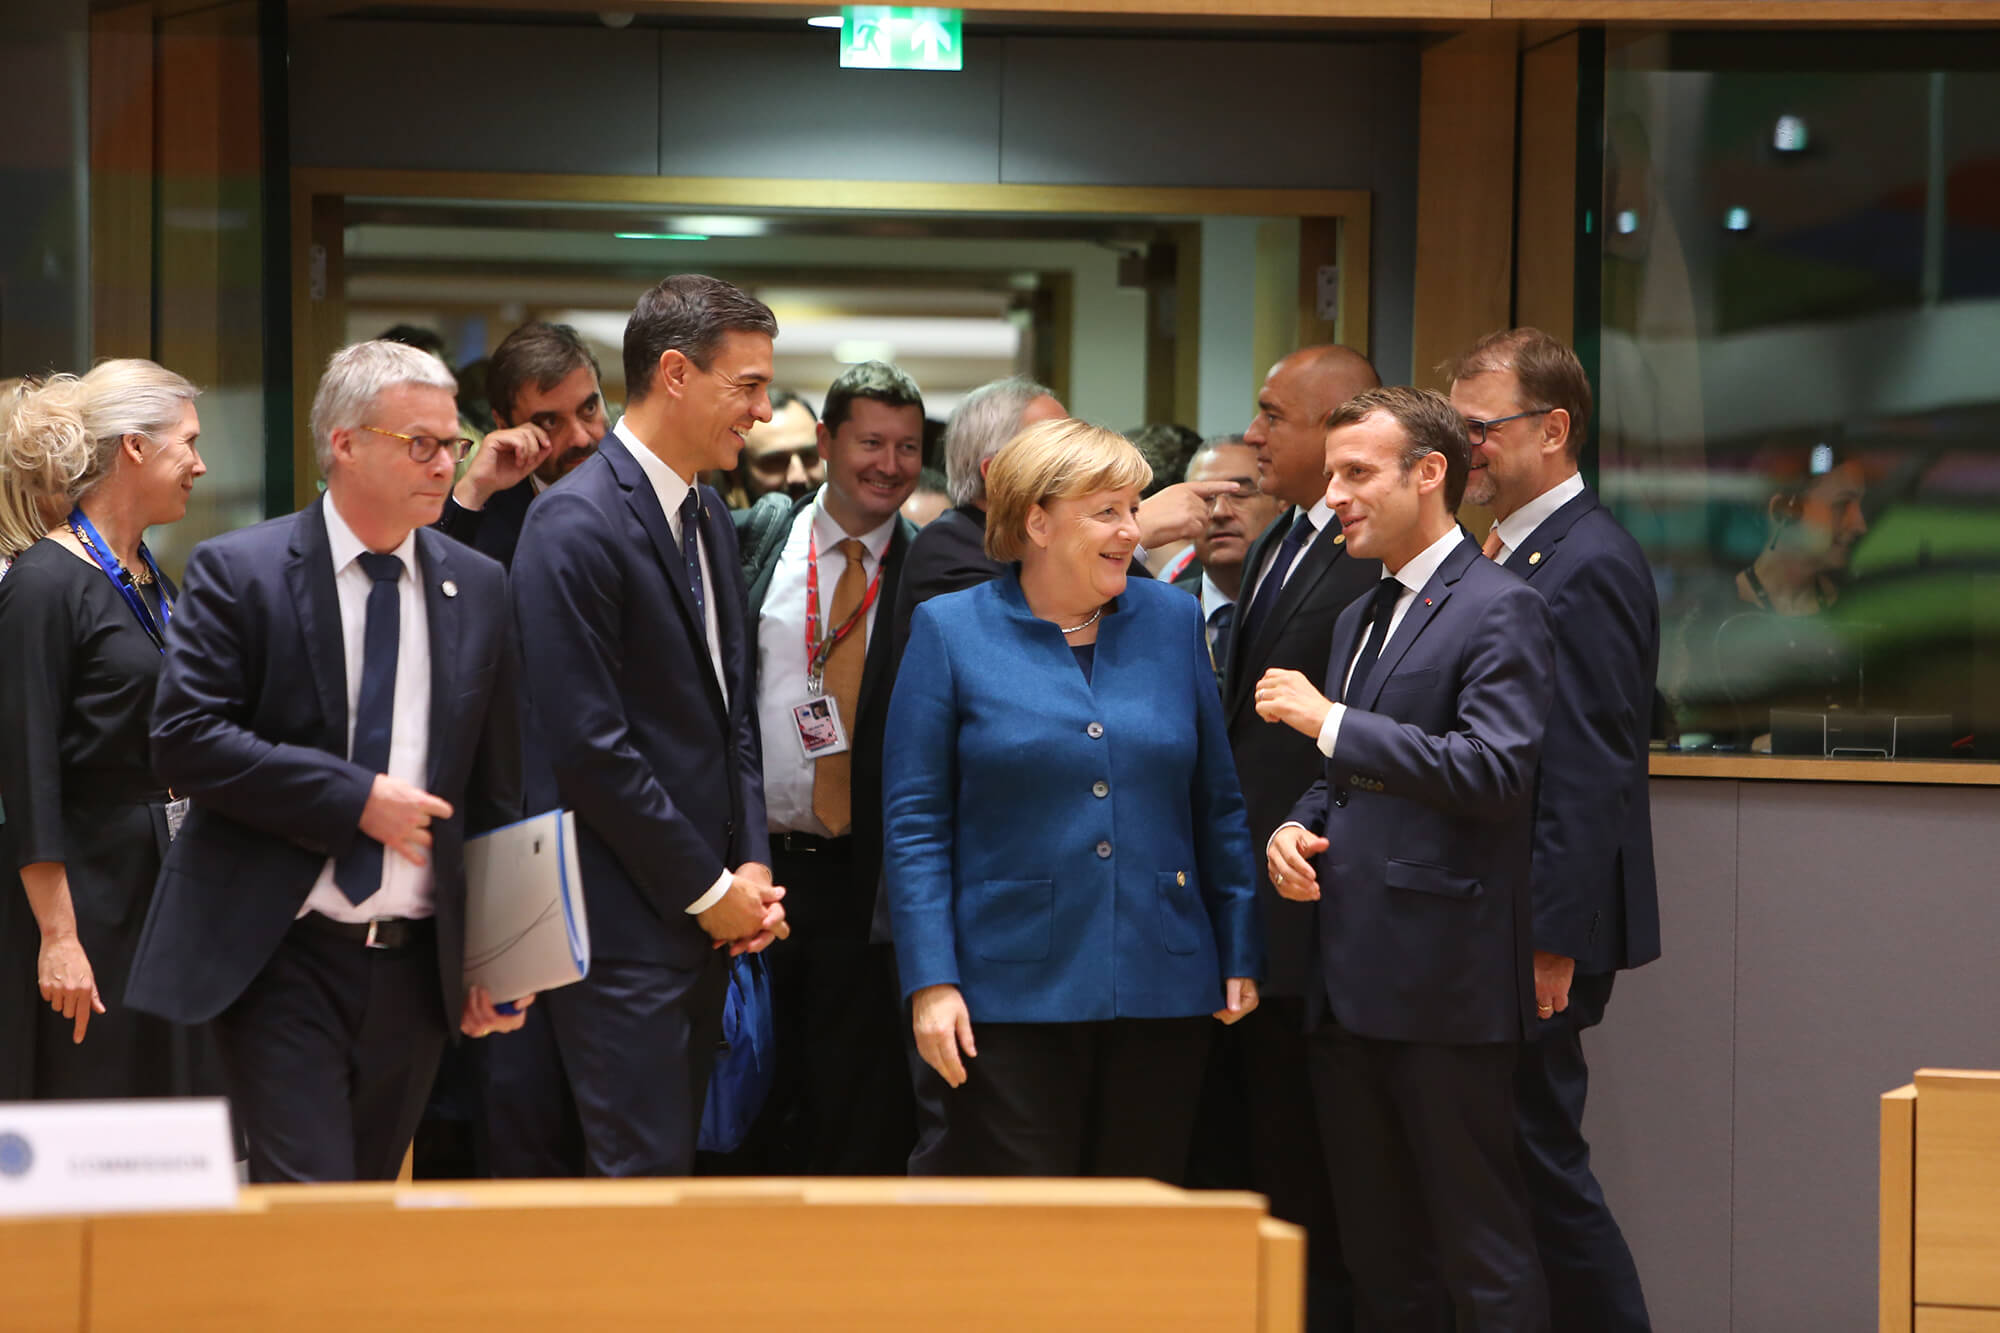 Merkel en Macron op een bijeenkomst van de Europese Raad © La Moncloa - Gobierno de España / Flickr.